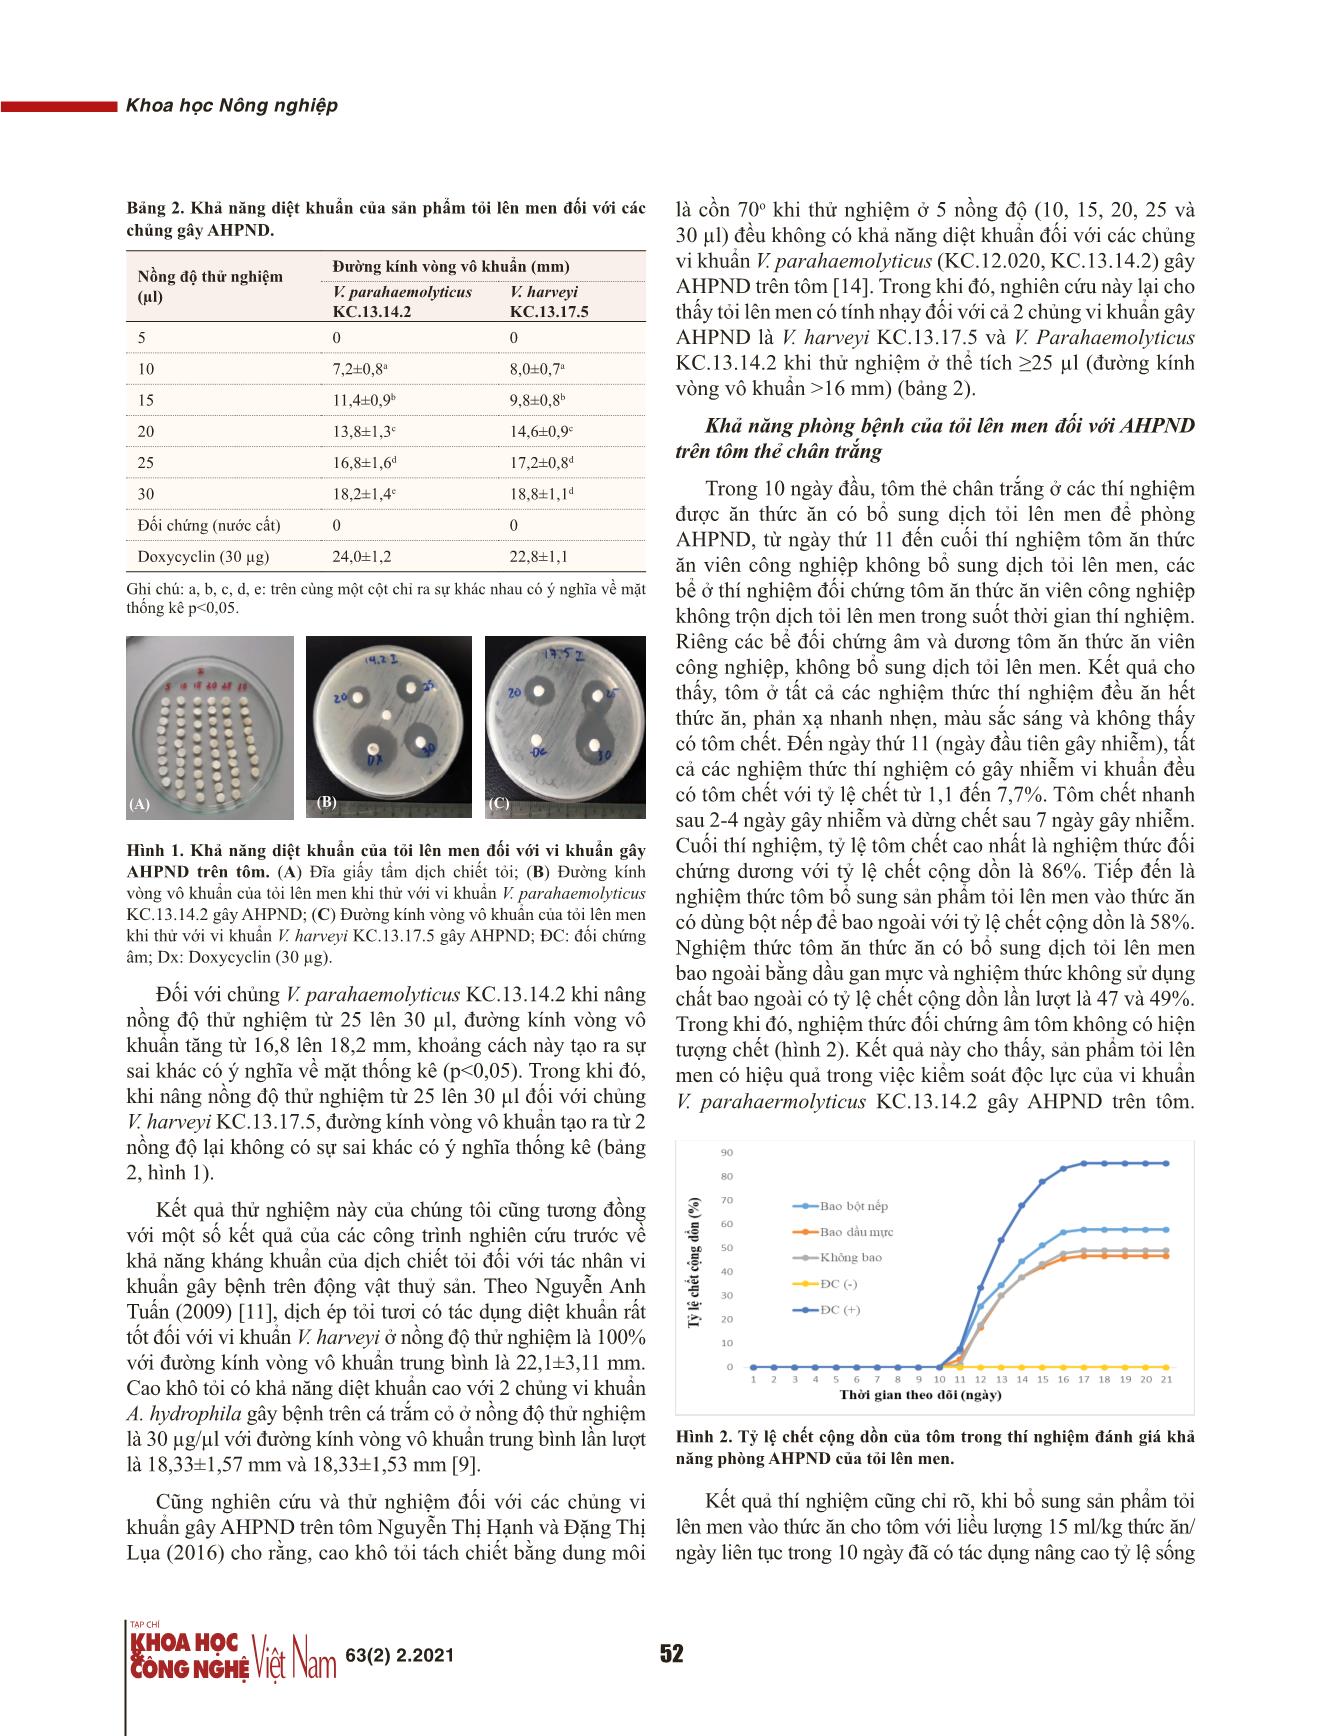 Khả năng kháng khuẩn và phòng bệnh hoại tử gan tụy cấp ở tôm thẻ chân trắng (Penaeus vannamei) của tỏi (Allum sativum) lên men trang 4